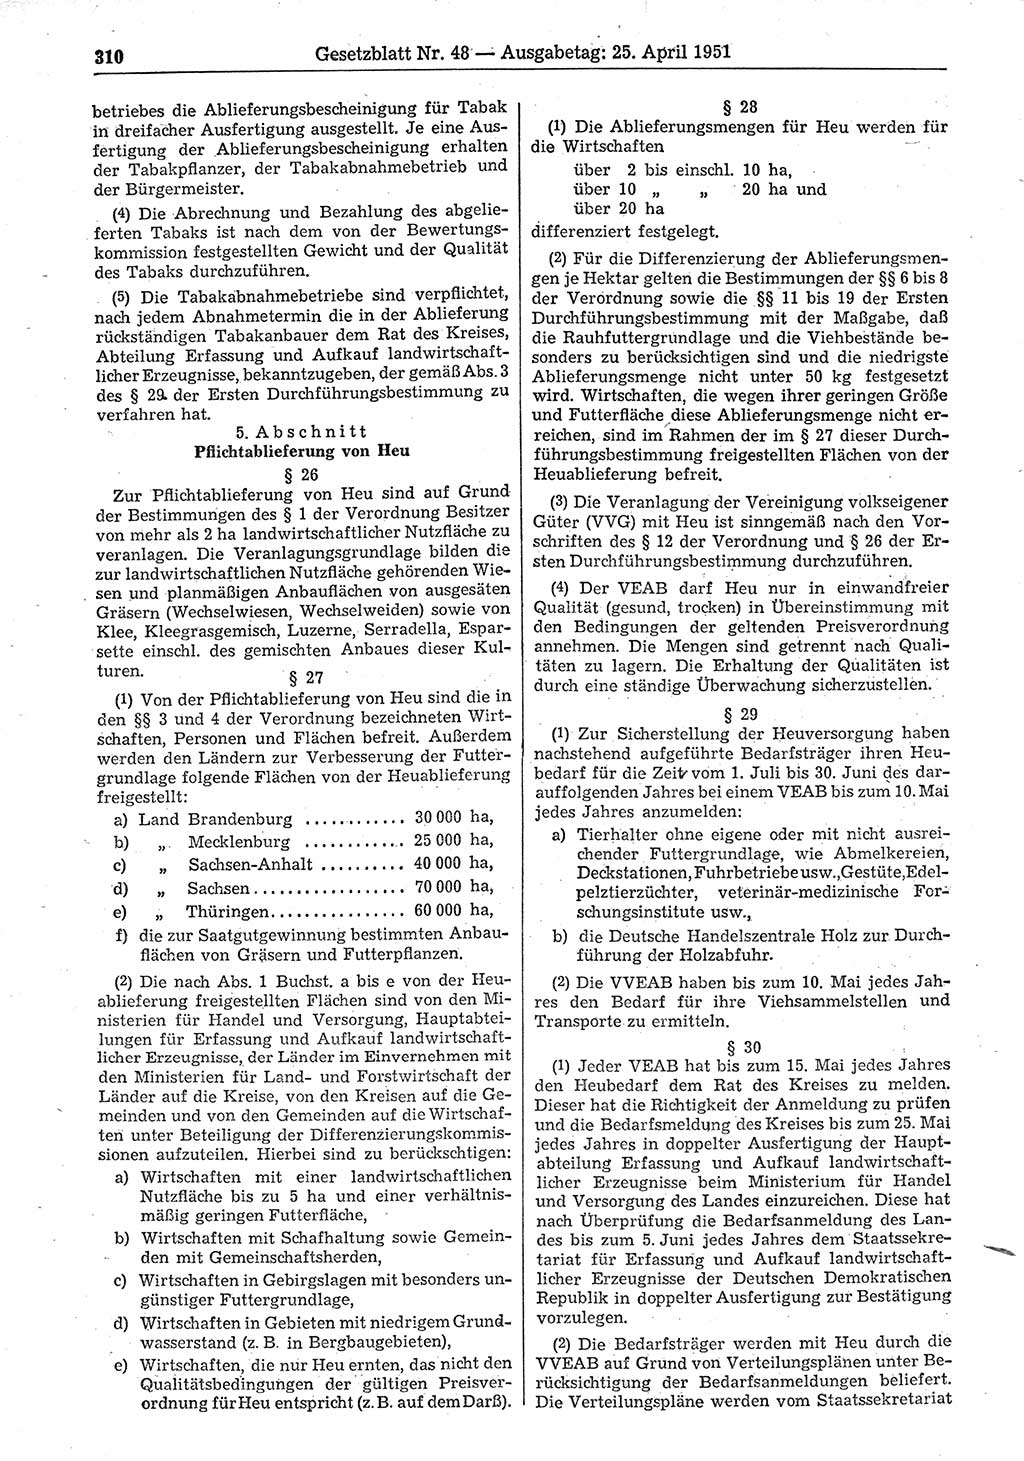 Gesetzblatt (GBl.) der Deutschen Demokratischen Republik (DDR) 1951, Seite 310 (GBl. DDR 1951, S. 310)